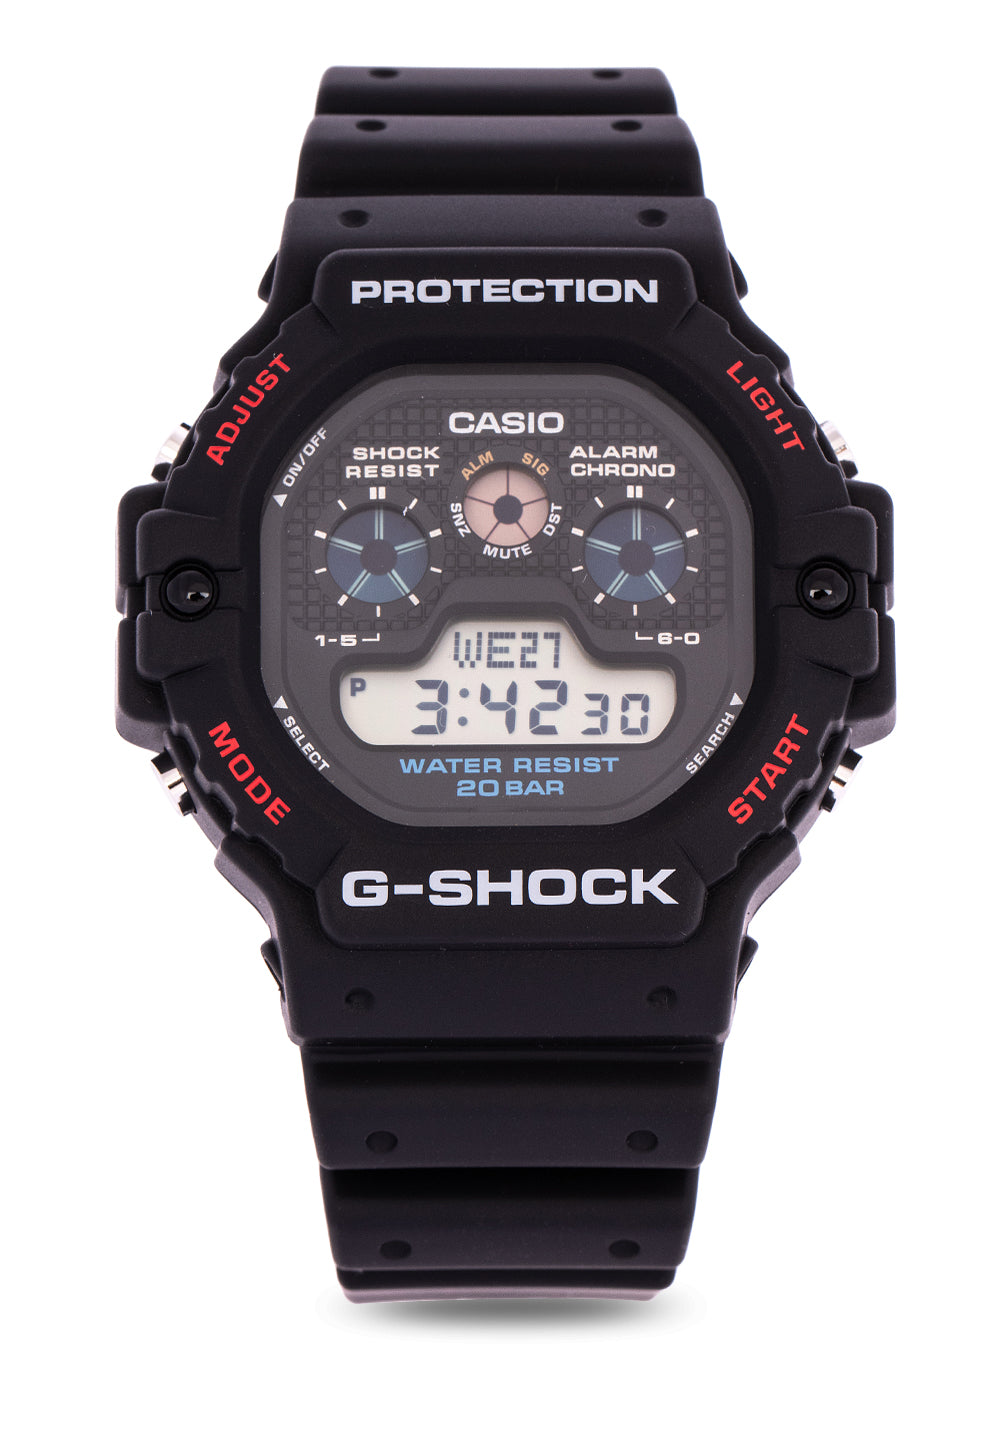 Casio G-shock DW-5900-1 Digital Rubber Strap Watch For Men-Watch Portal Philippines